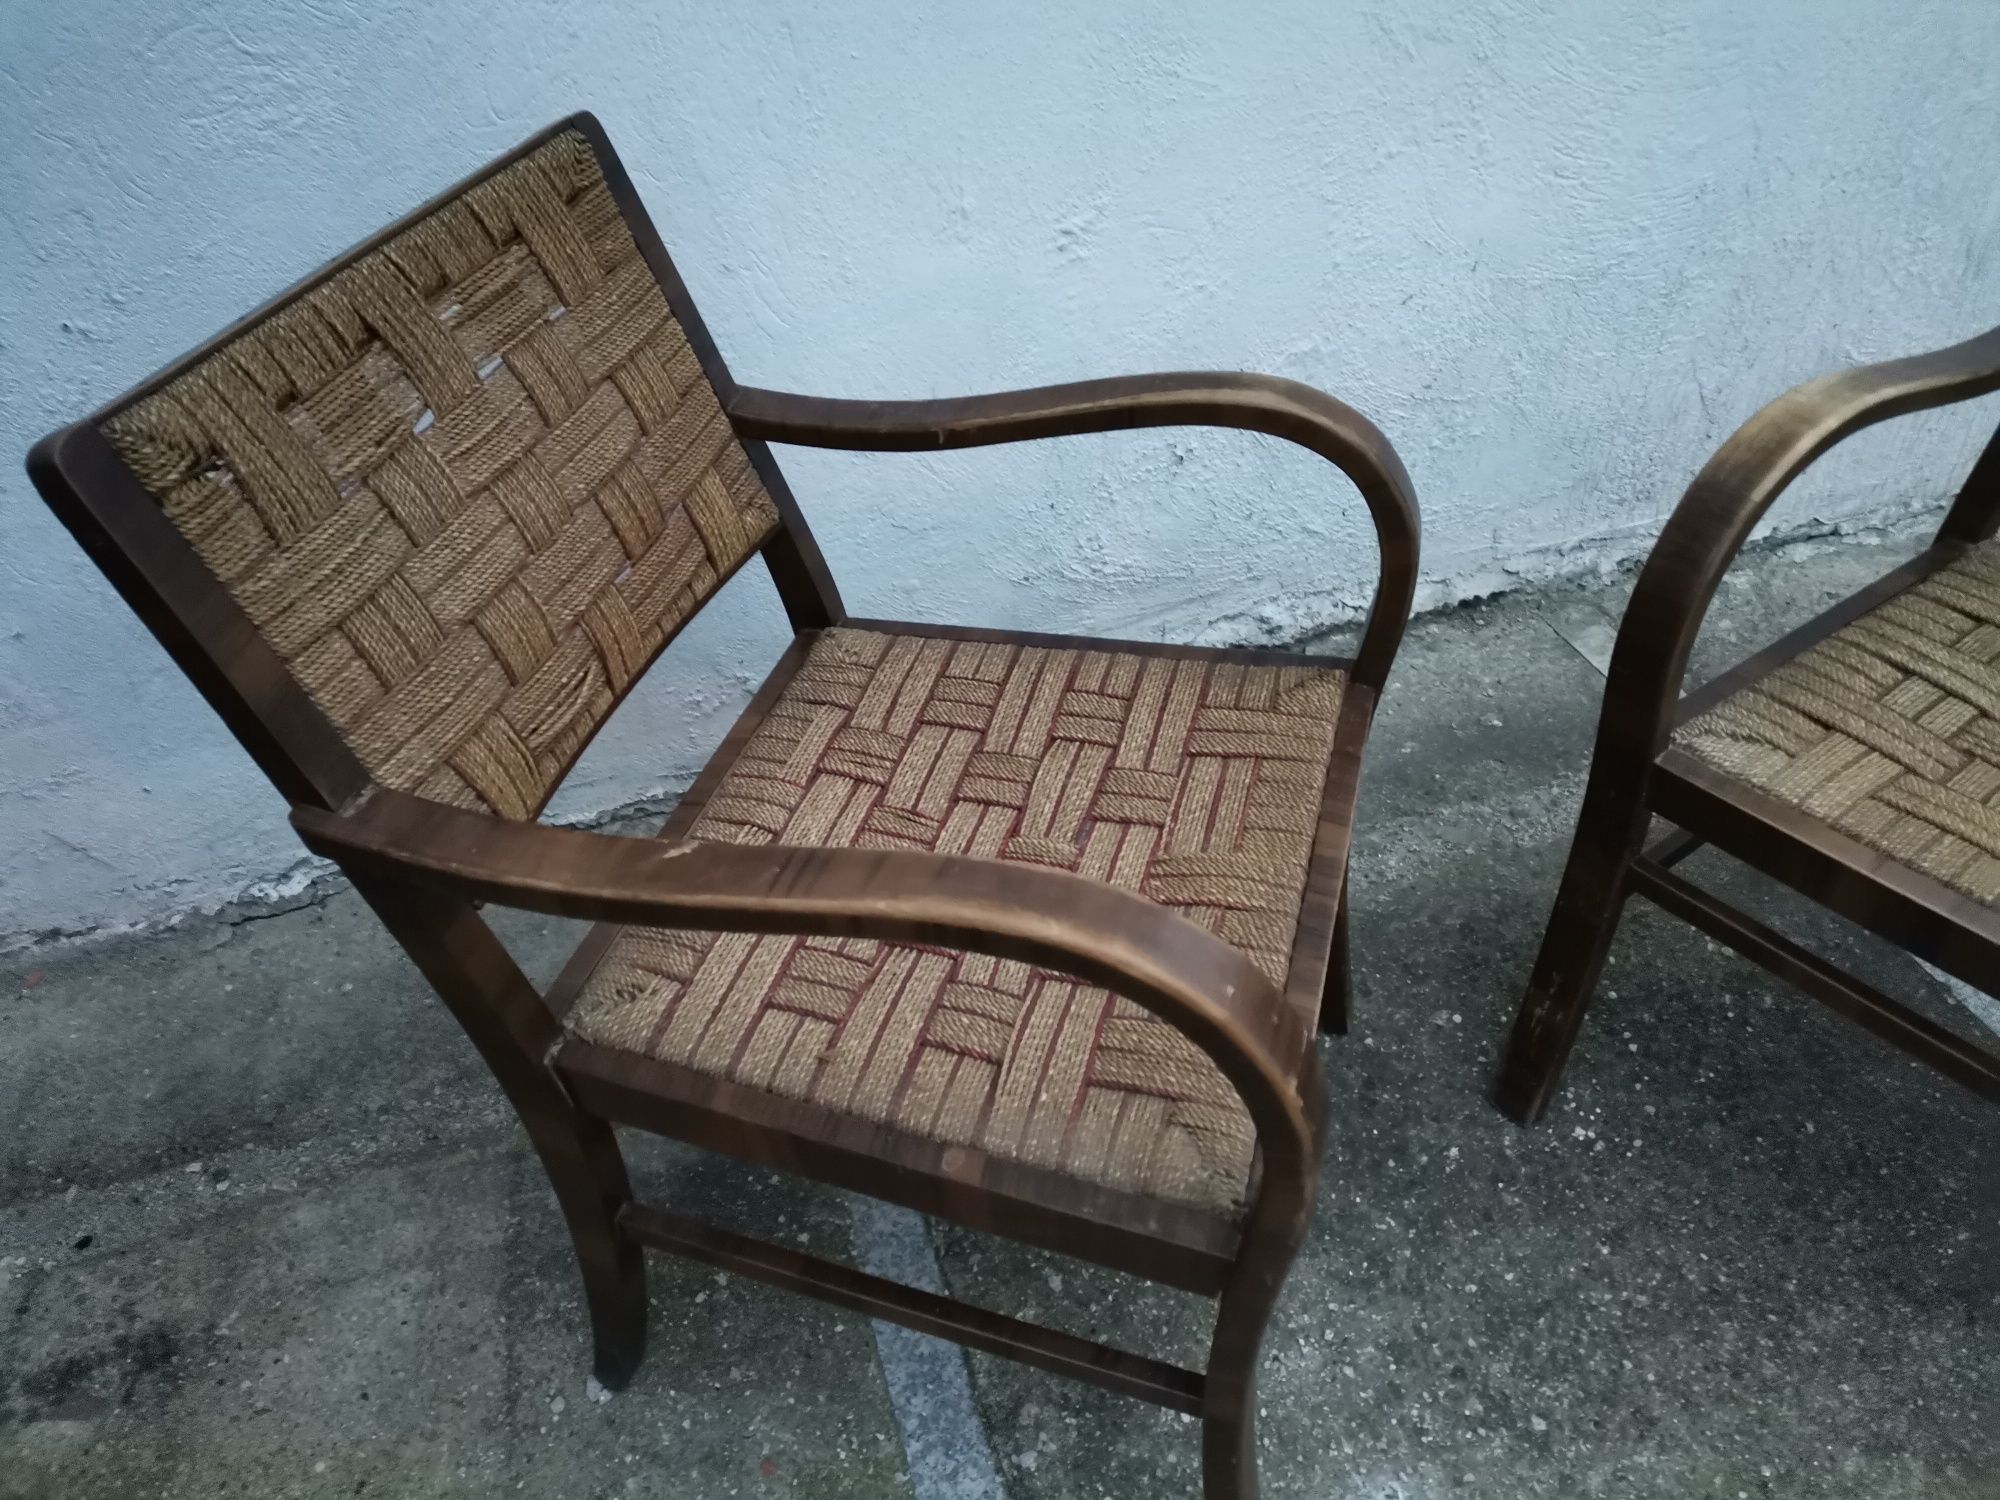 Krzesła fotelowe, przeplatane